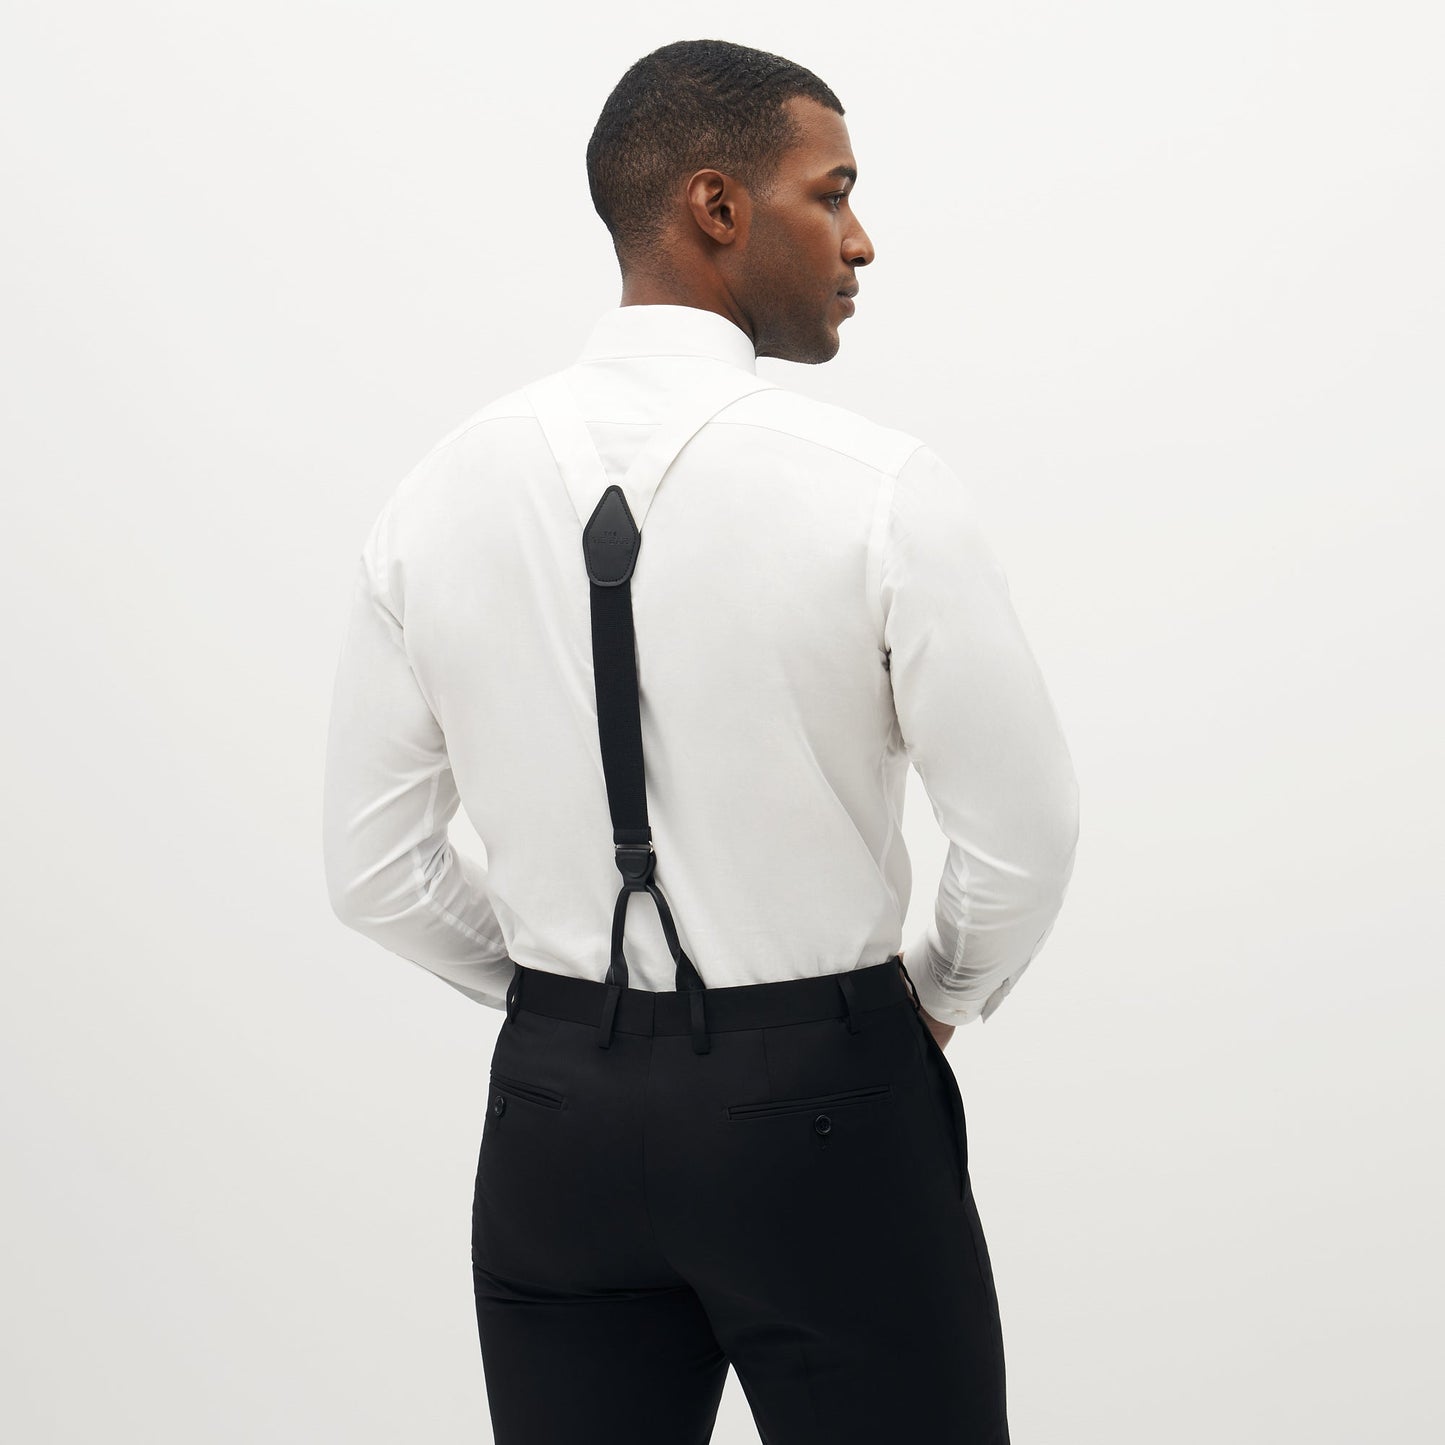 Grosgrain Solid White Suspenders by SuitShop